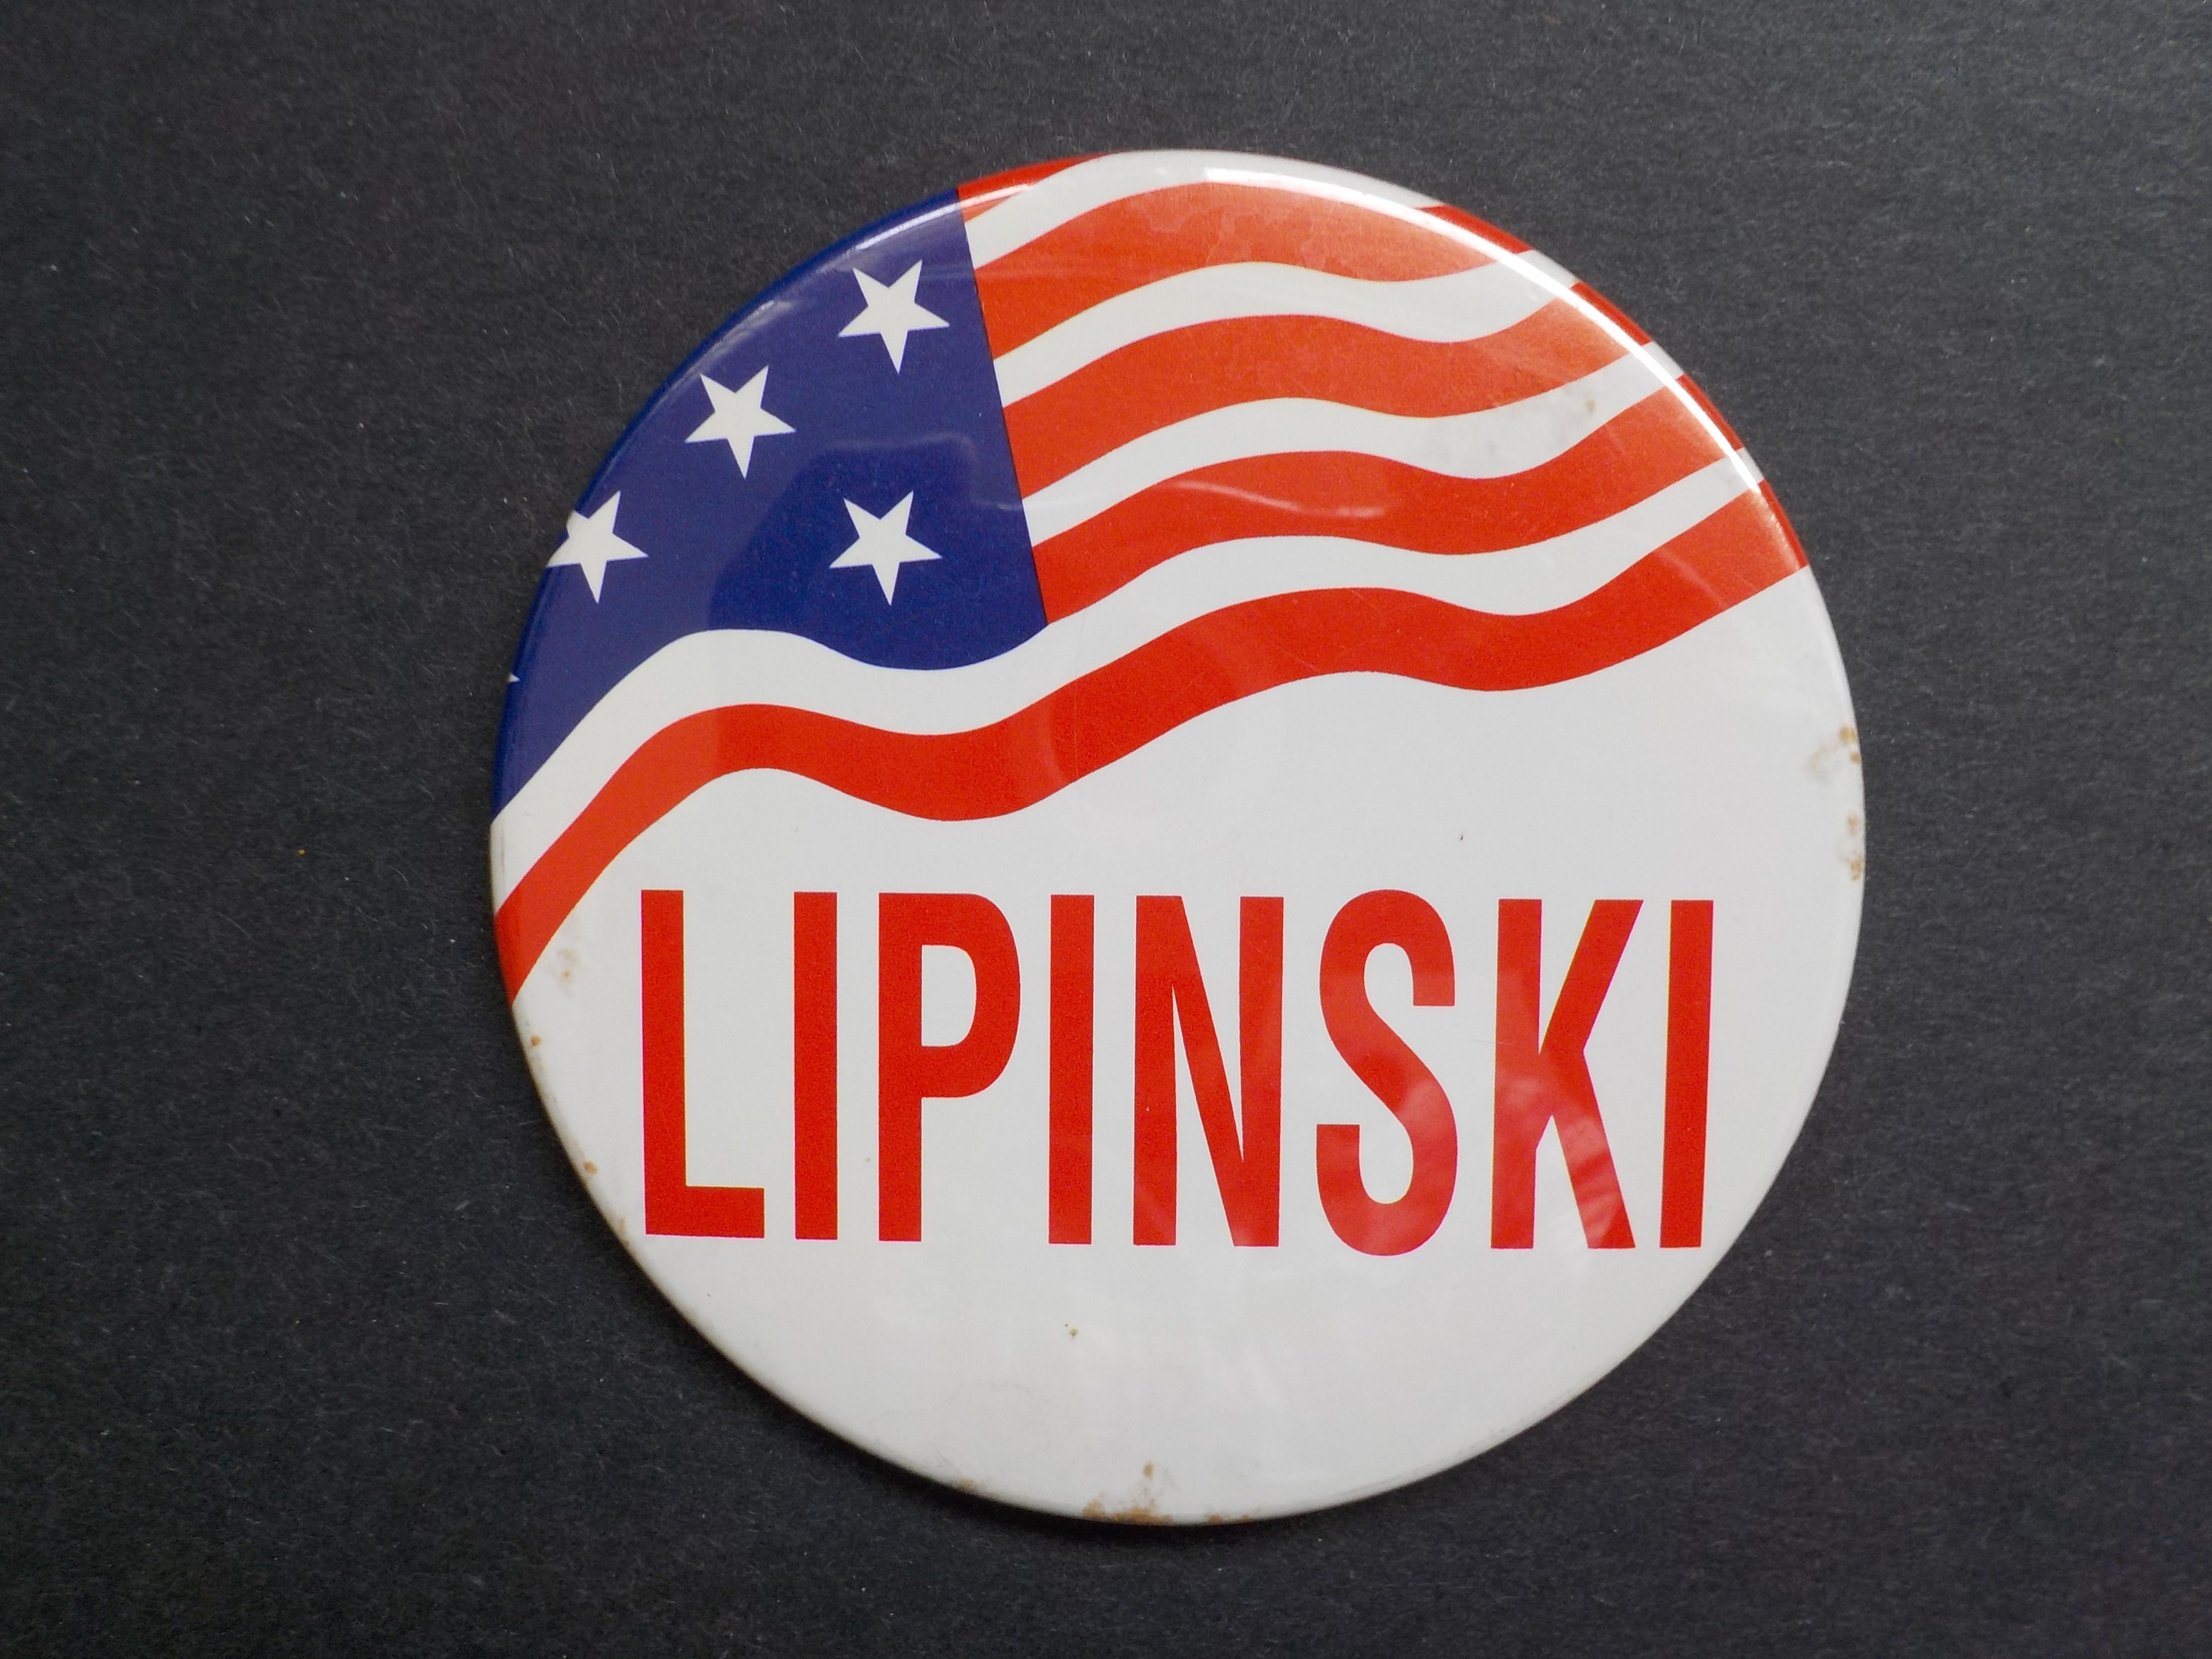 Bill Lipinski